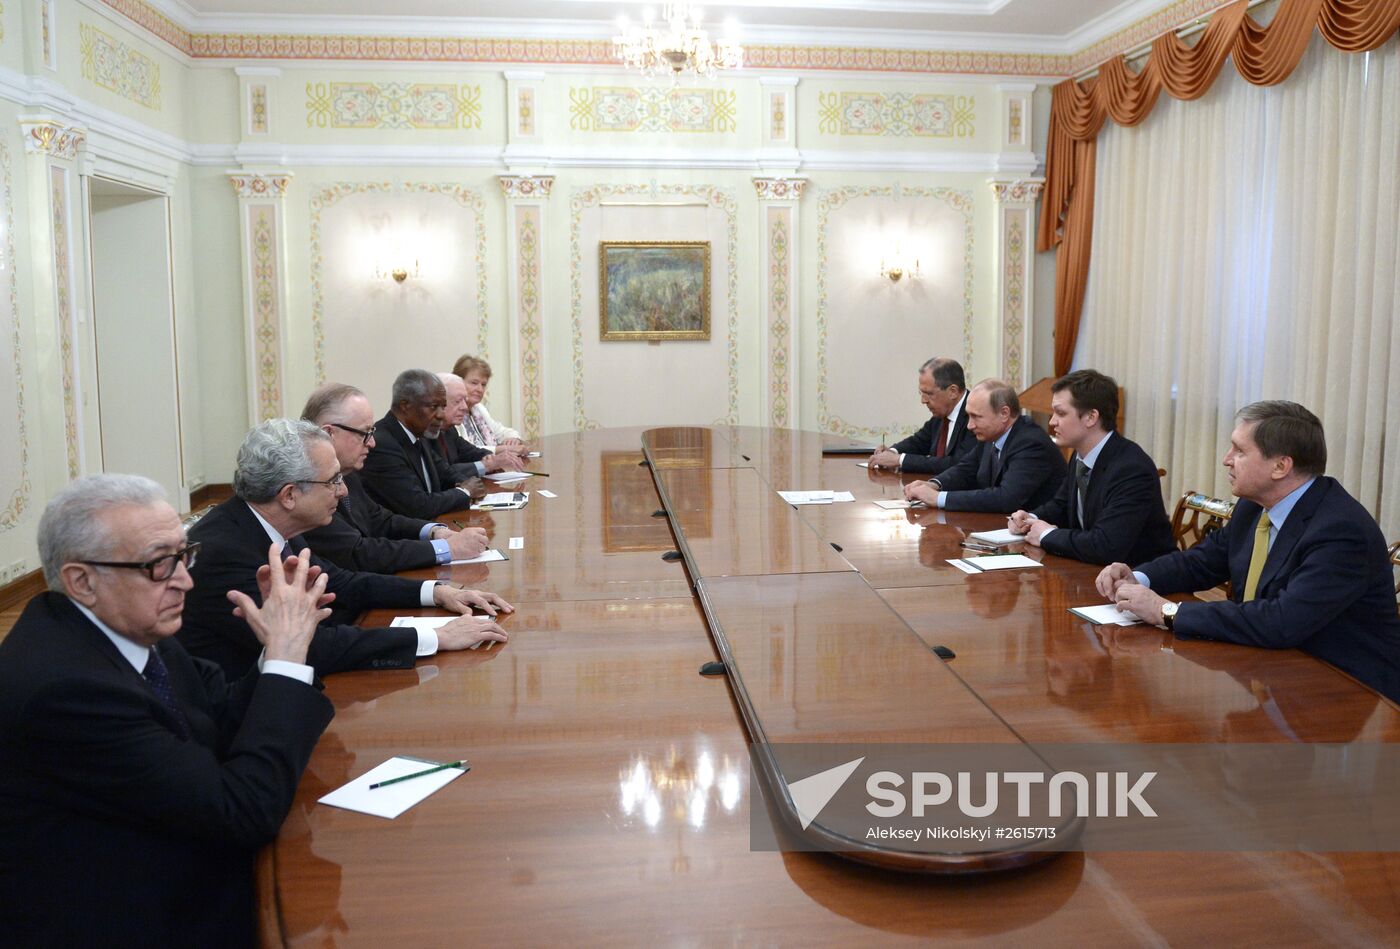 Vladimir Putin meets with members of The Elders